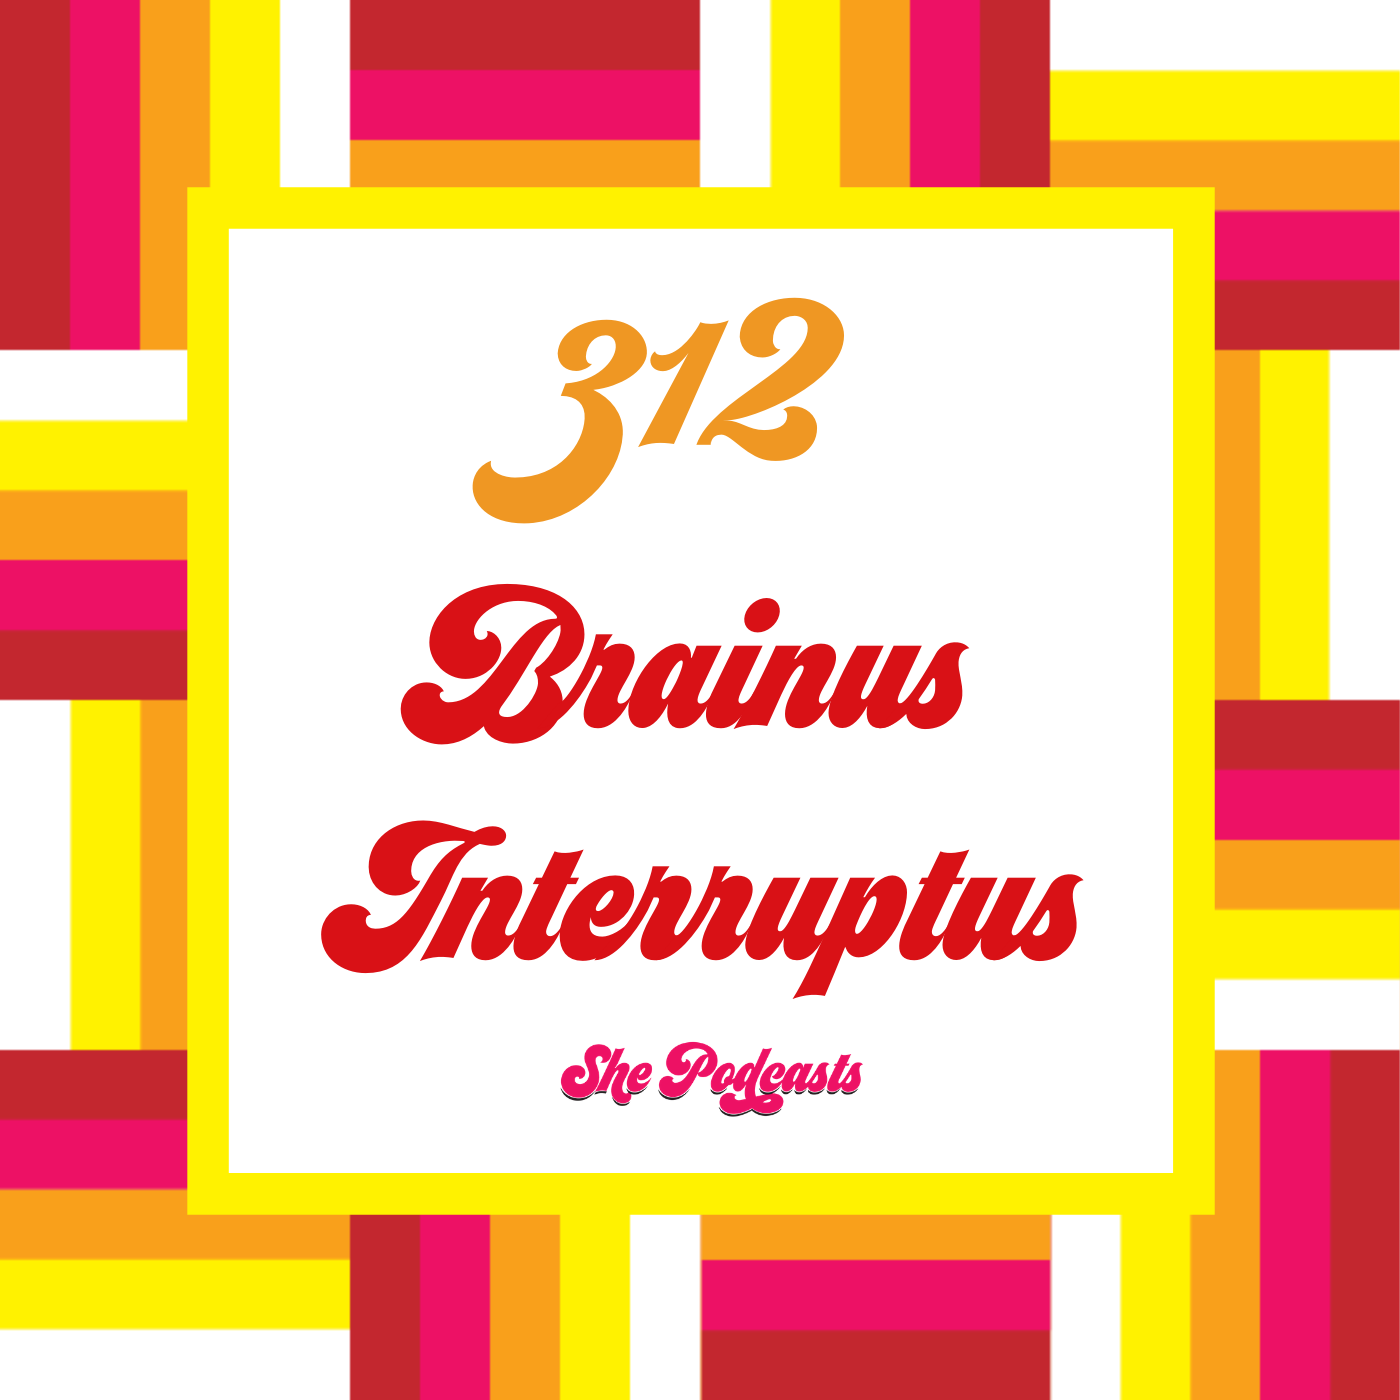 312 Brainus Interruptus